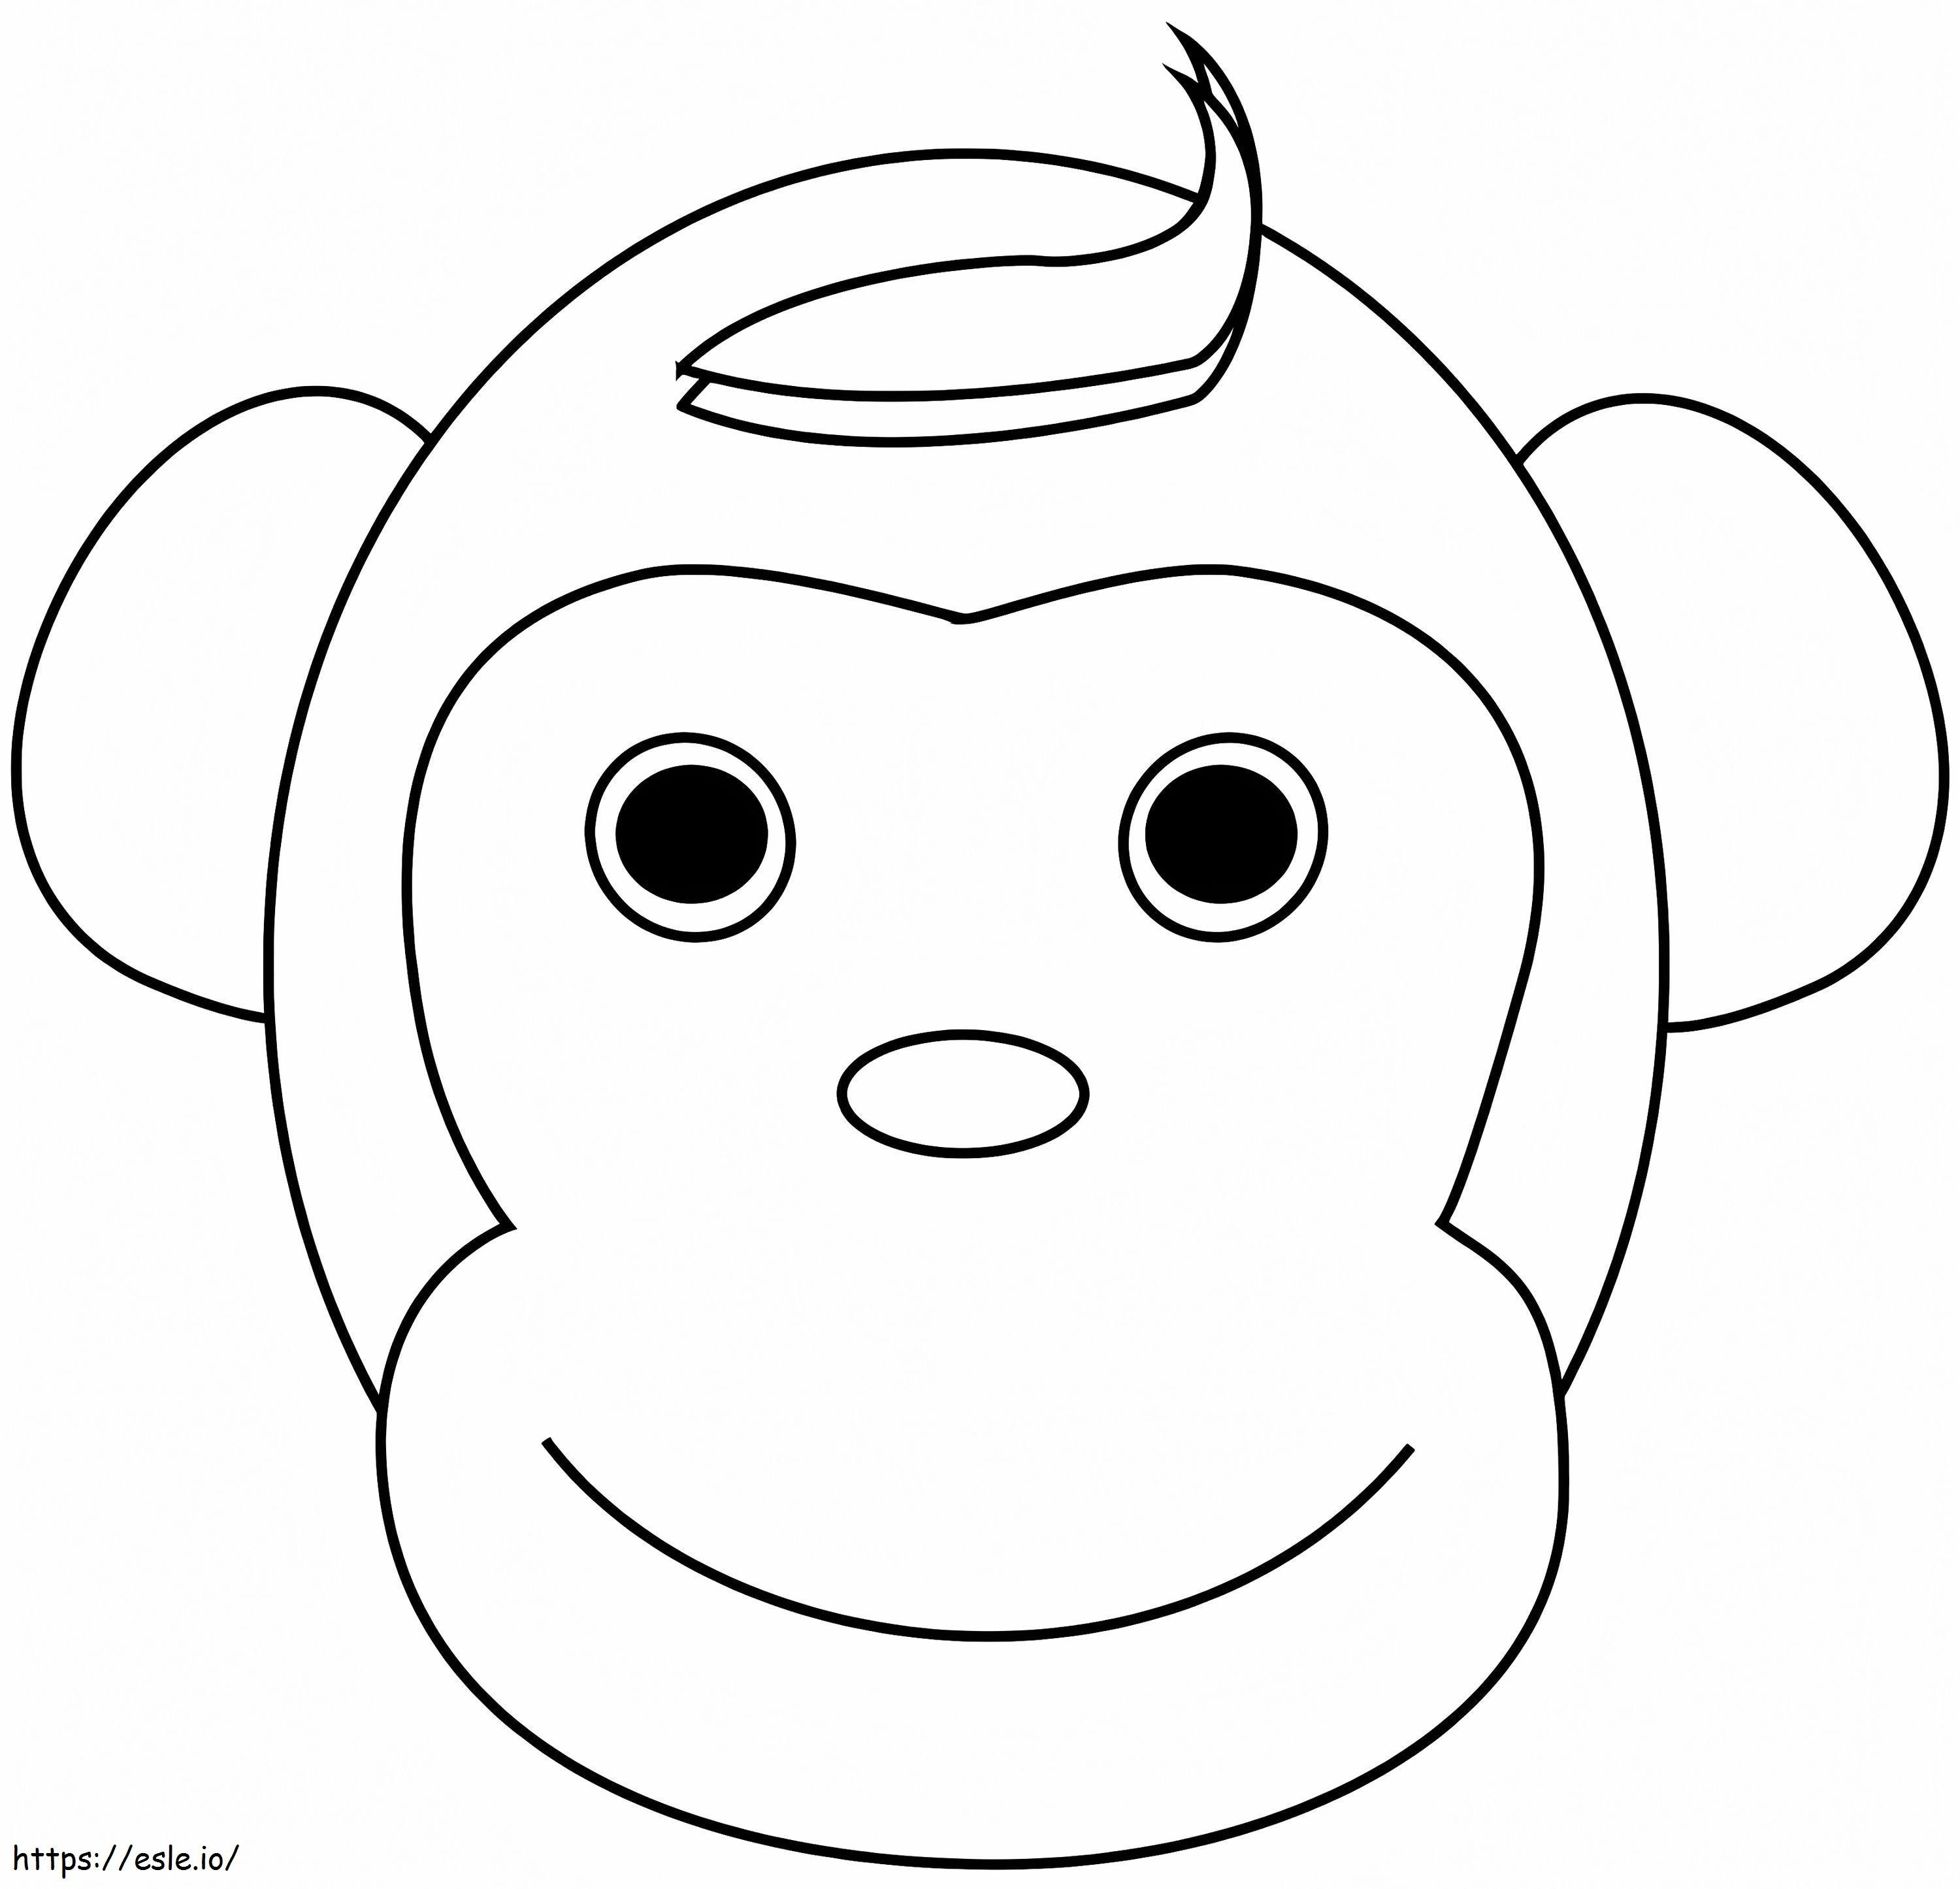 Szczęśliwa twarz małpy kolorowanka